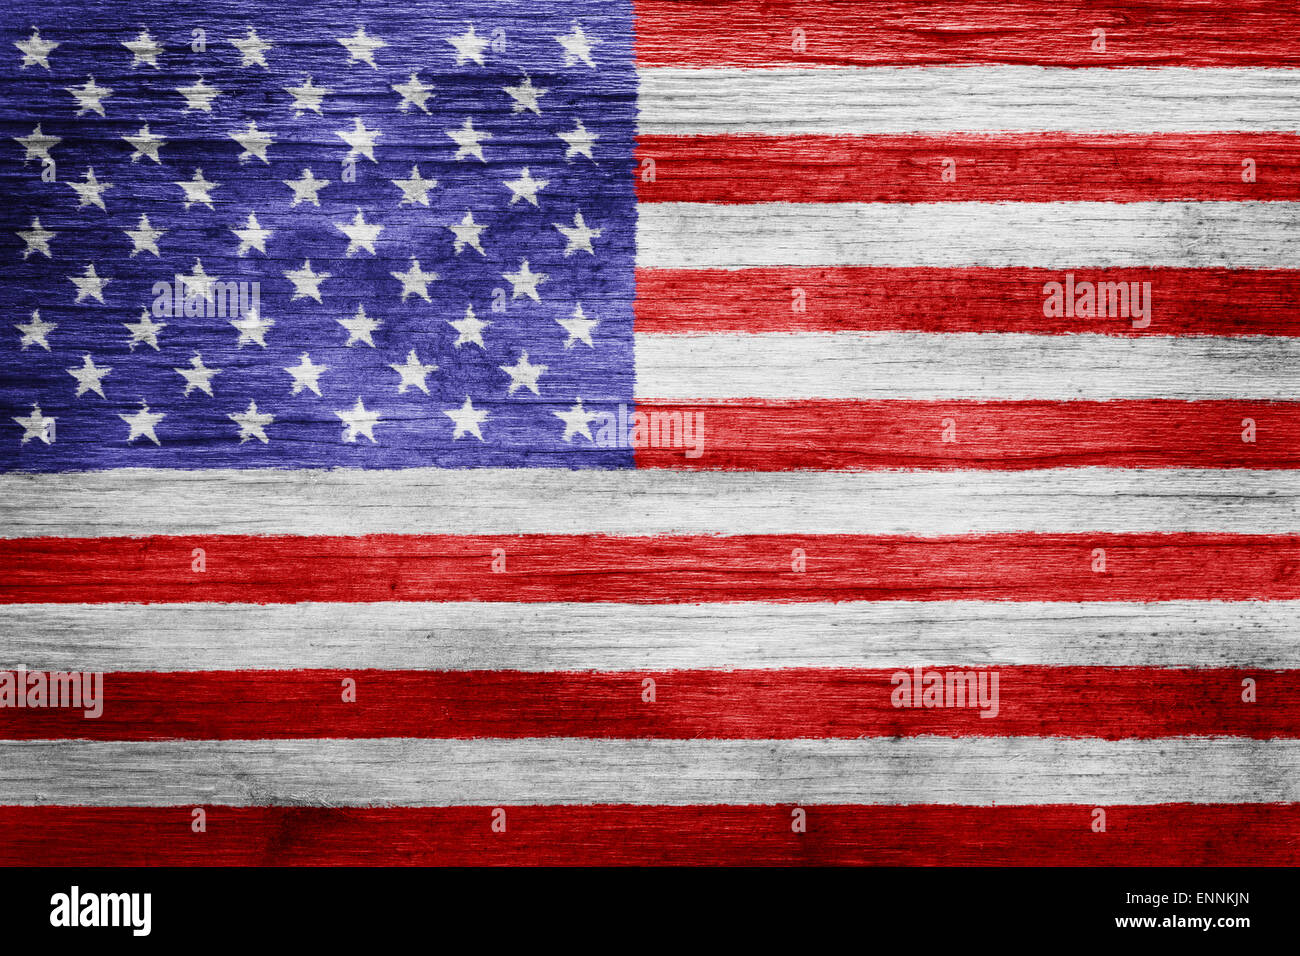 Porté vintage American flag background Banque D'Images